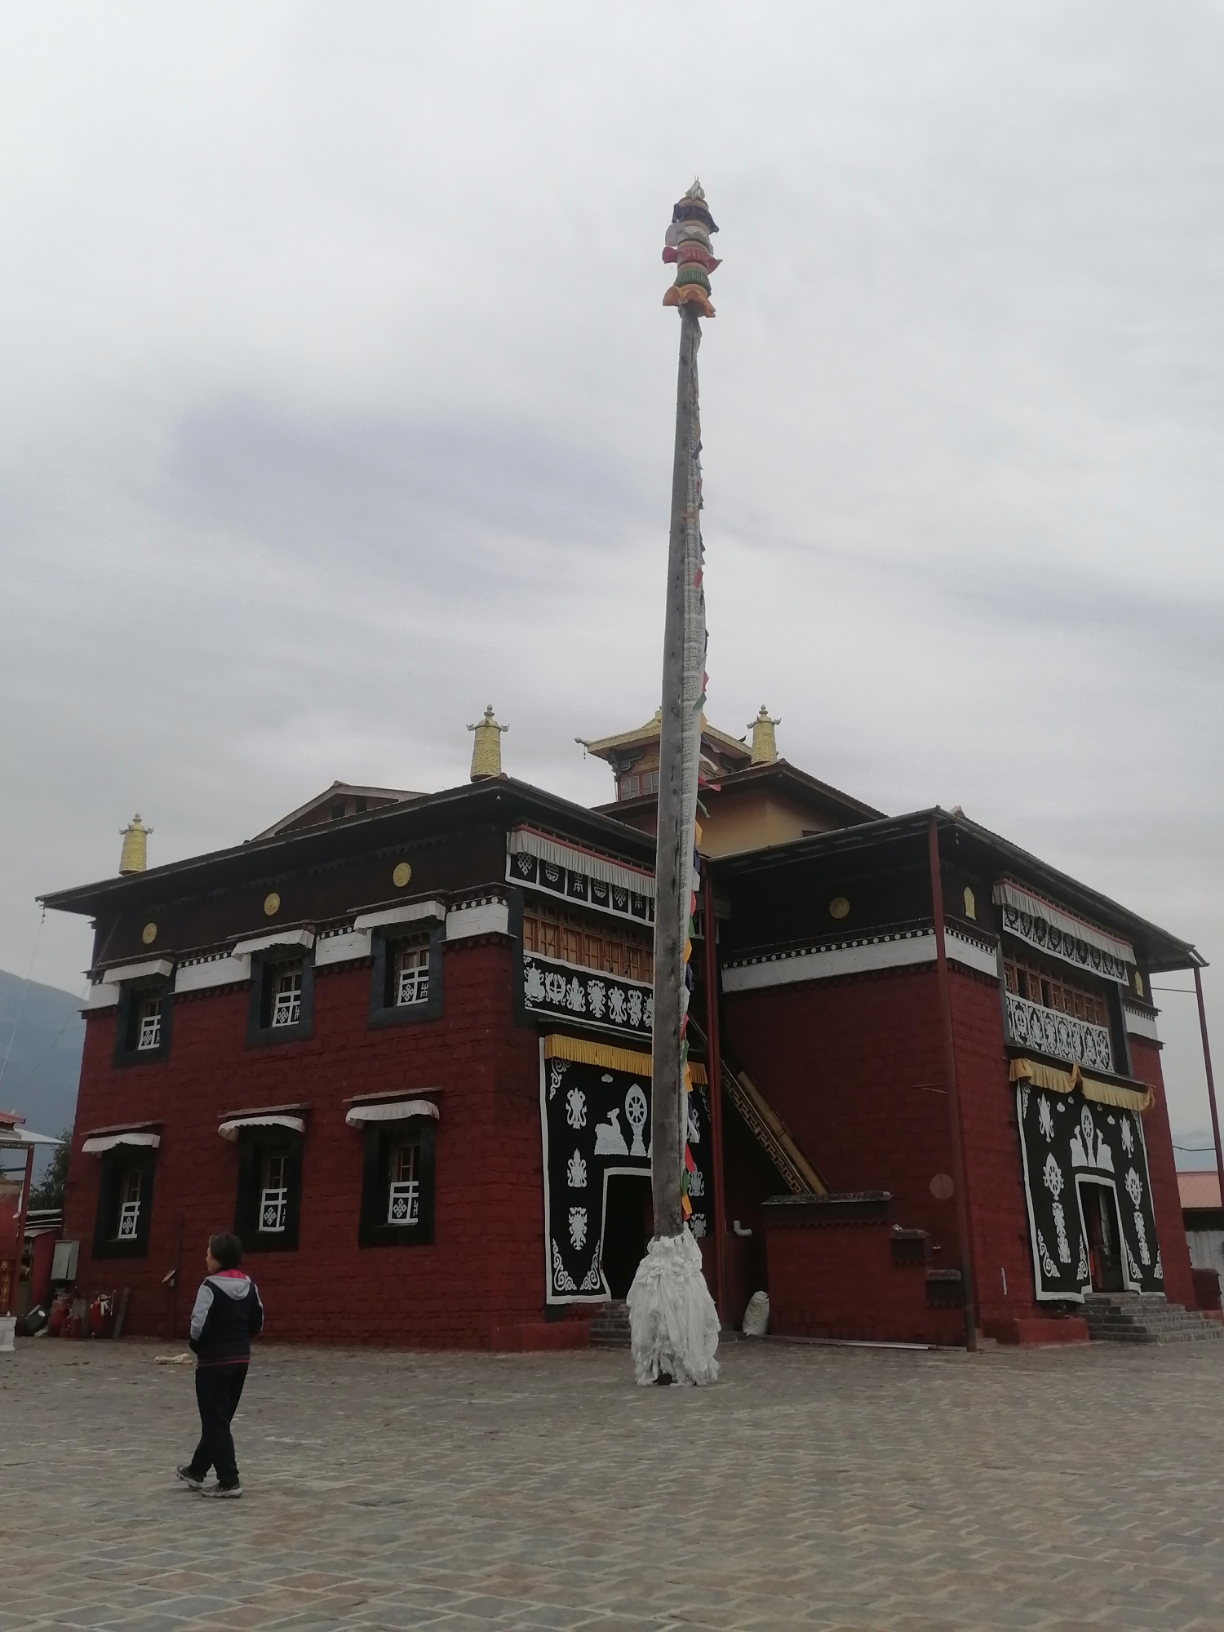 4月23旧西藏亚东县一下亚东乡一夏日村一嘎举寺一乃堆拉杜鹃花海。本来想去原始森林国门玩一玩，但普通游